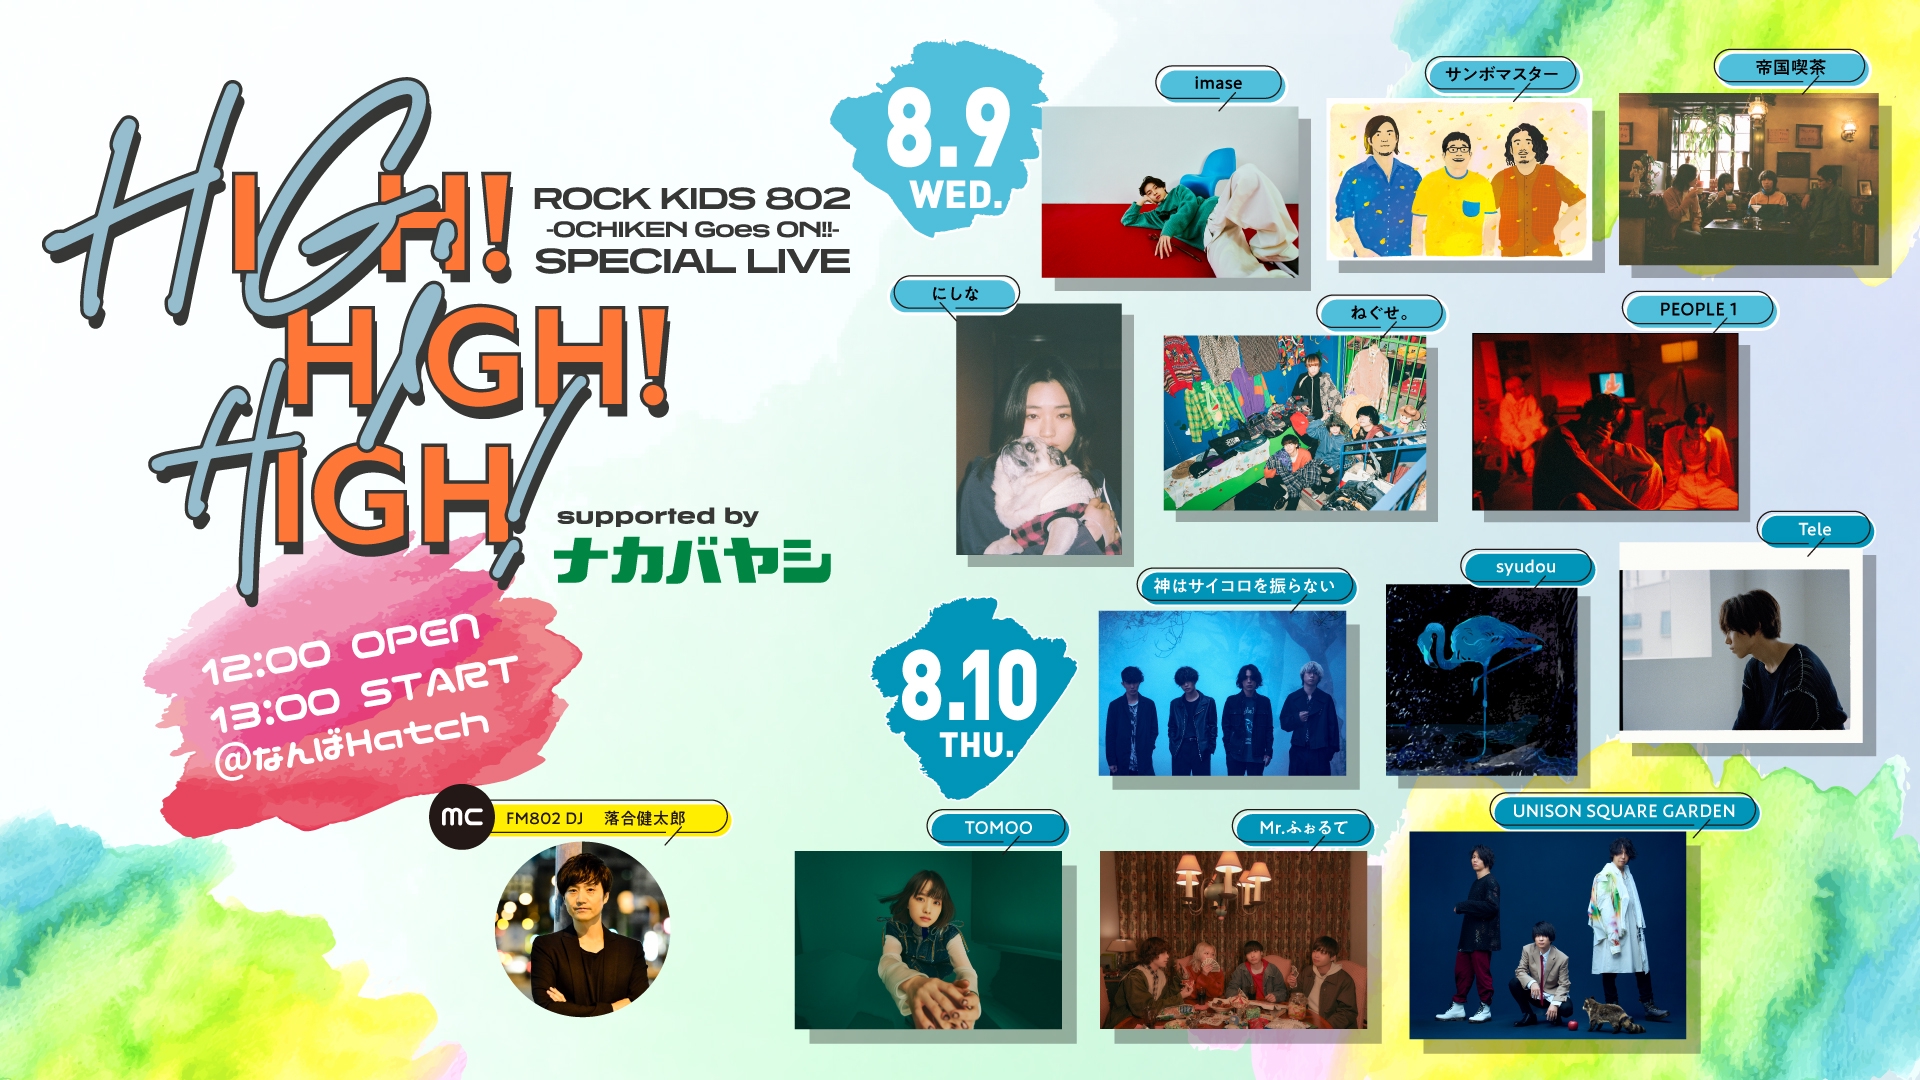 8/10(木)ROCK KIDS 802-OCHIKEN Goes ON!!-SPECIAL LIVE HIGH 